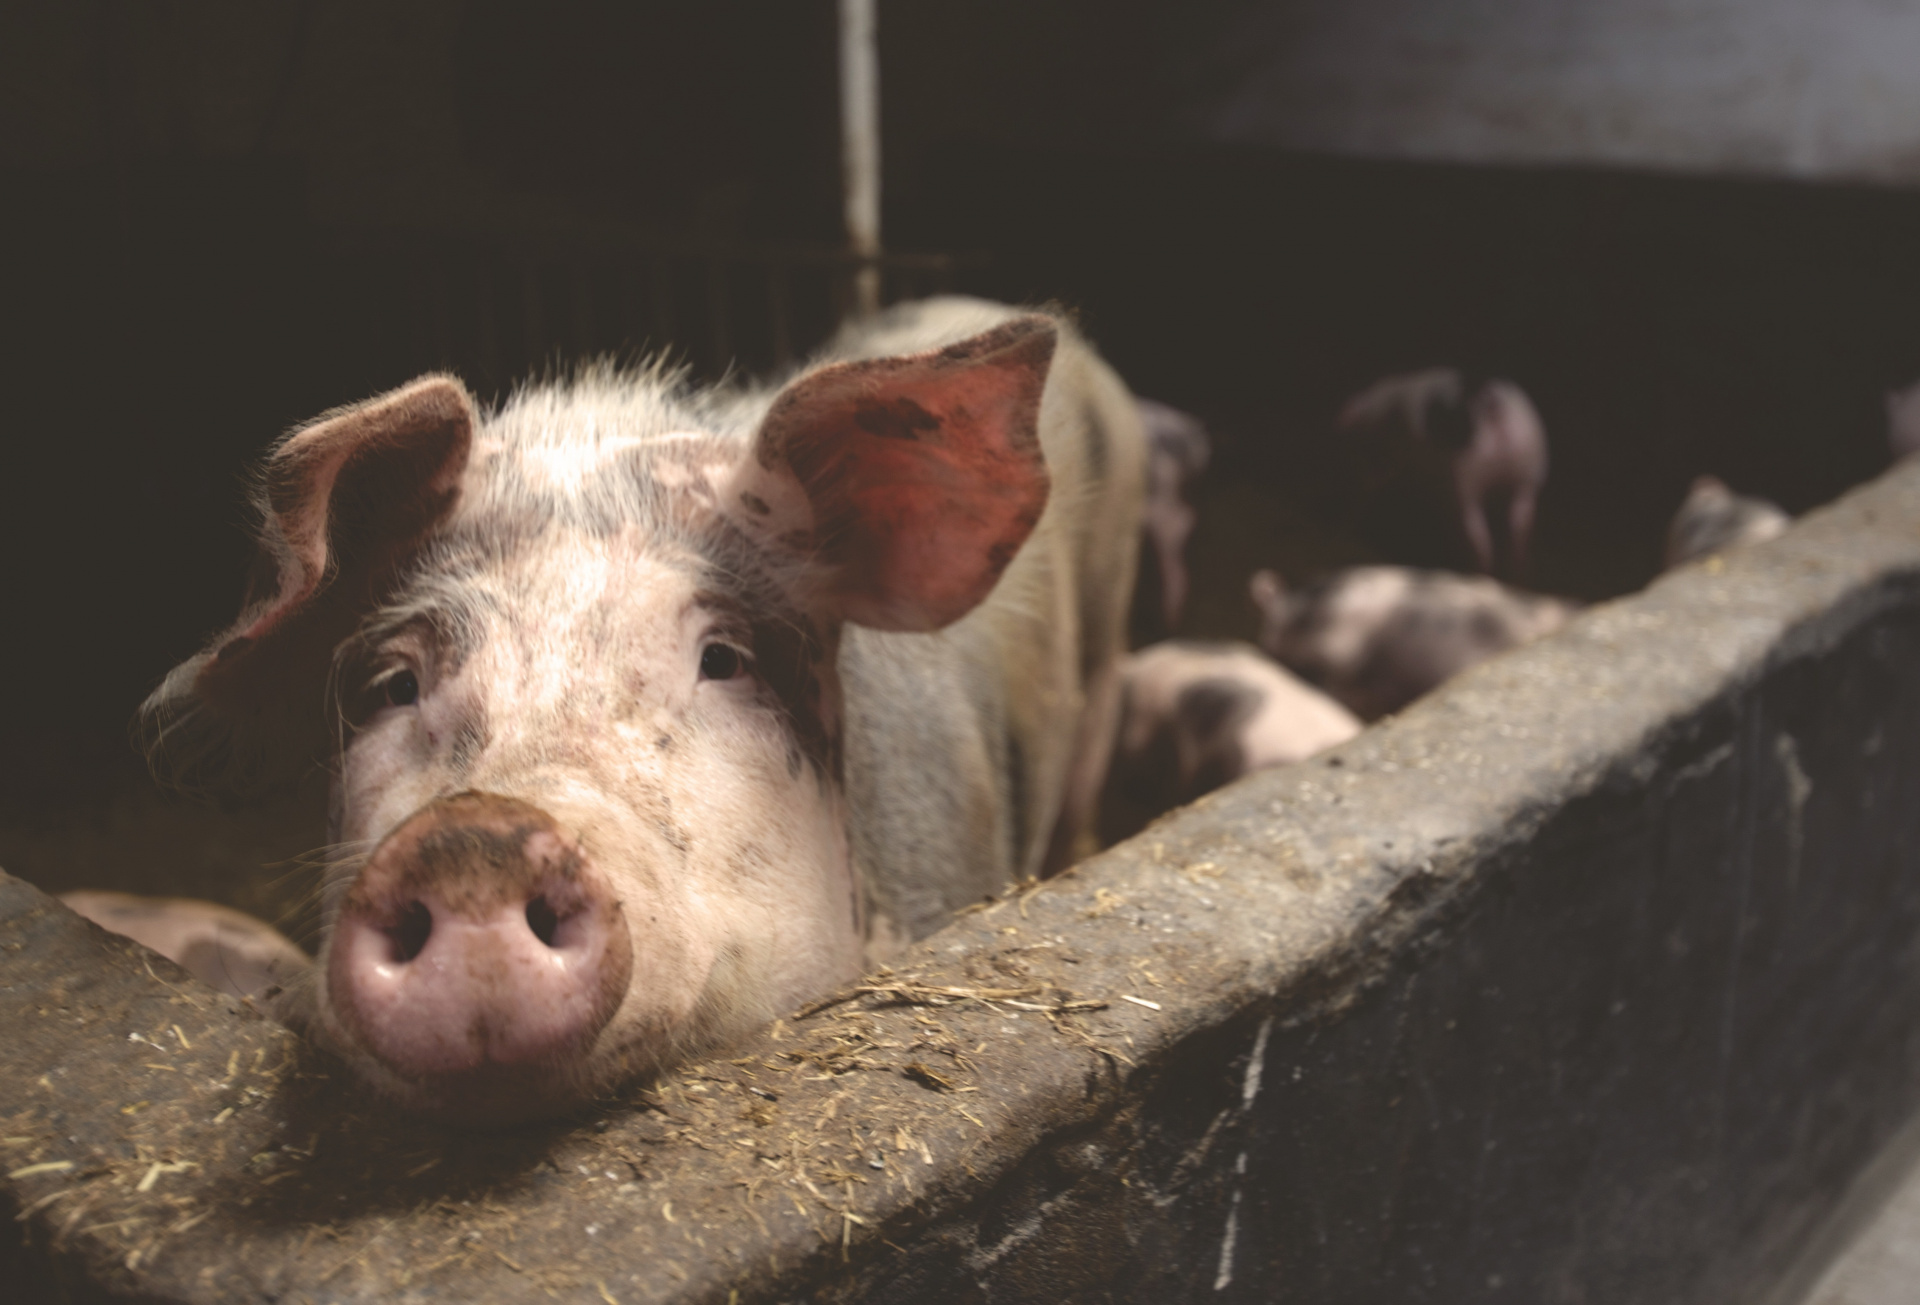 В образцах свинины обнаружена ДНК вируса африканской чумы свиней